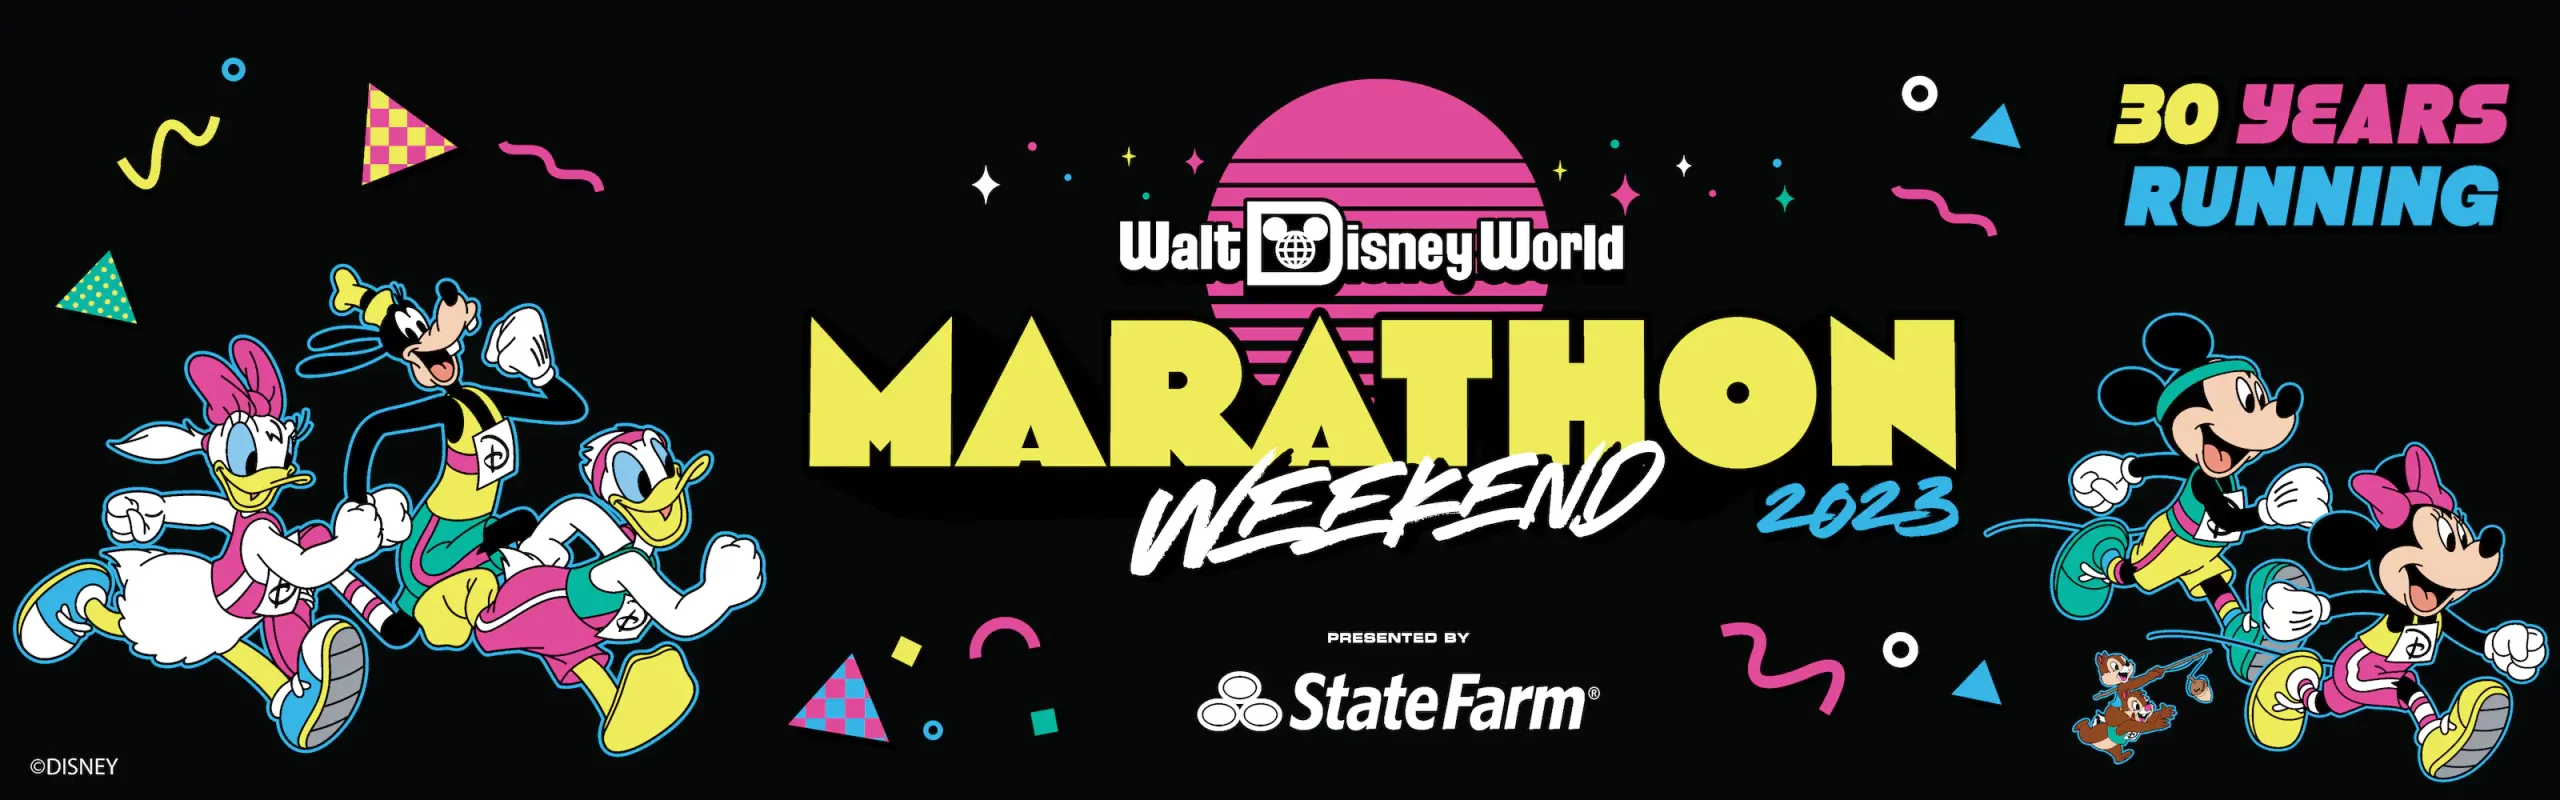 Walt Disney World Marathon Weekend 2023